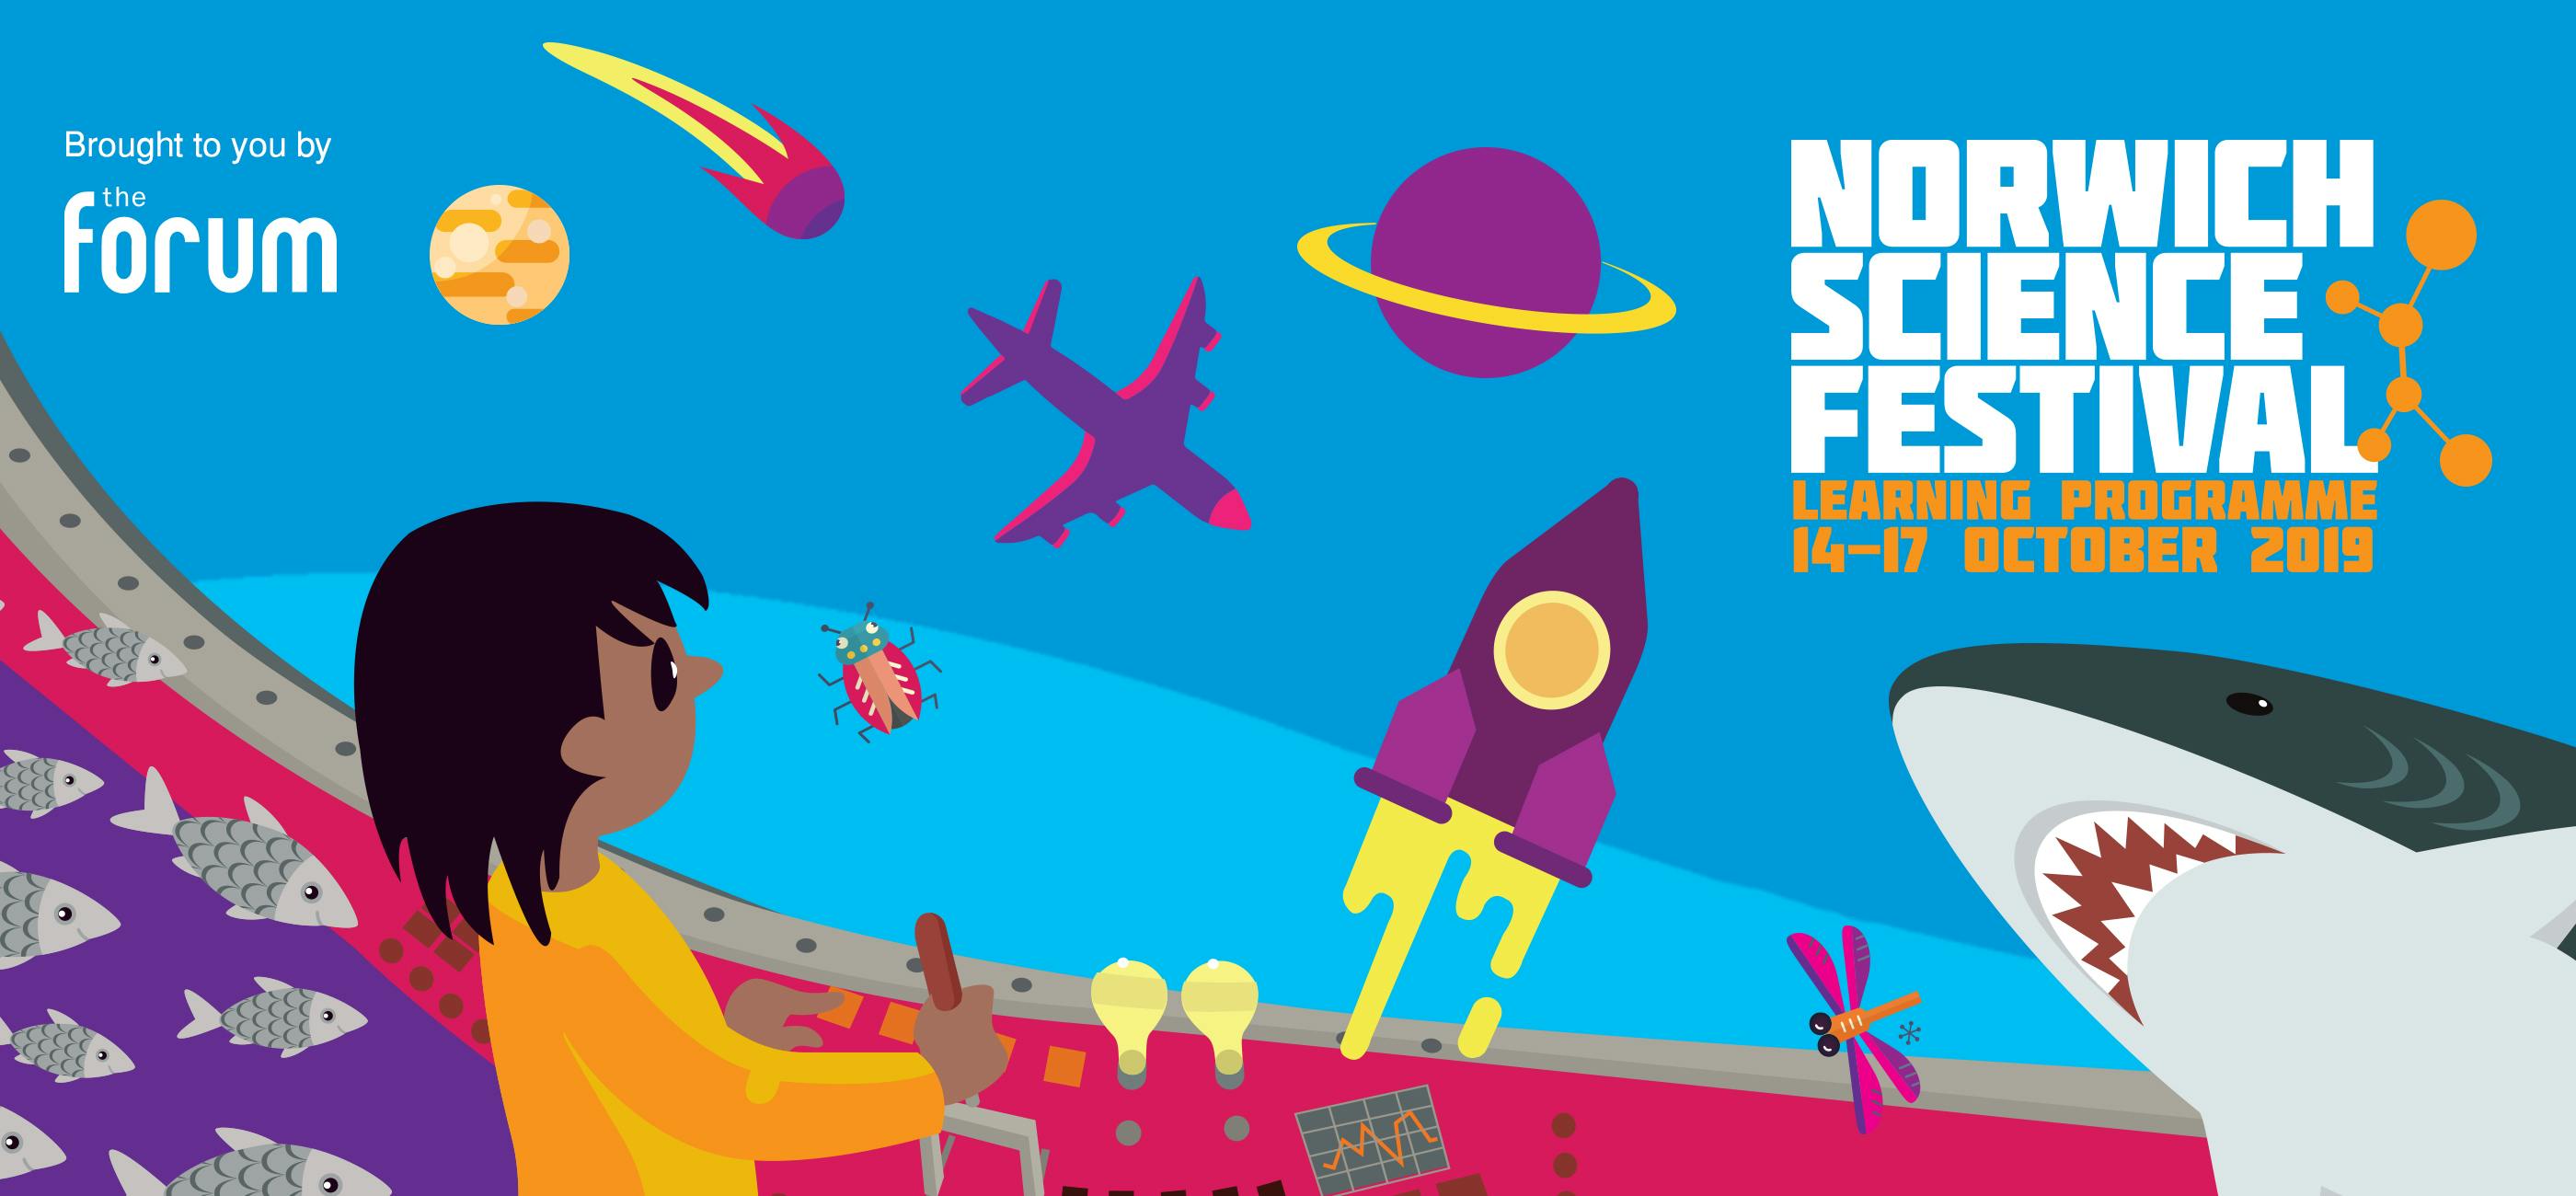 Norwich Science Festival 2019 Learning Programme